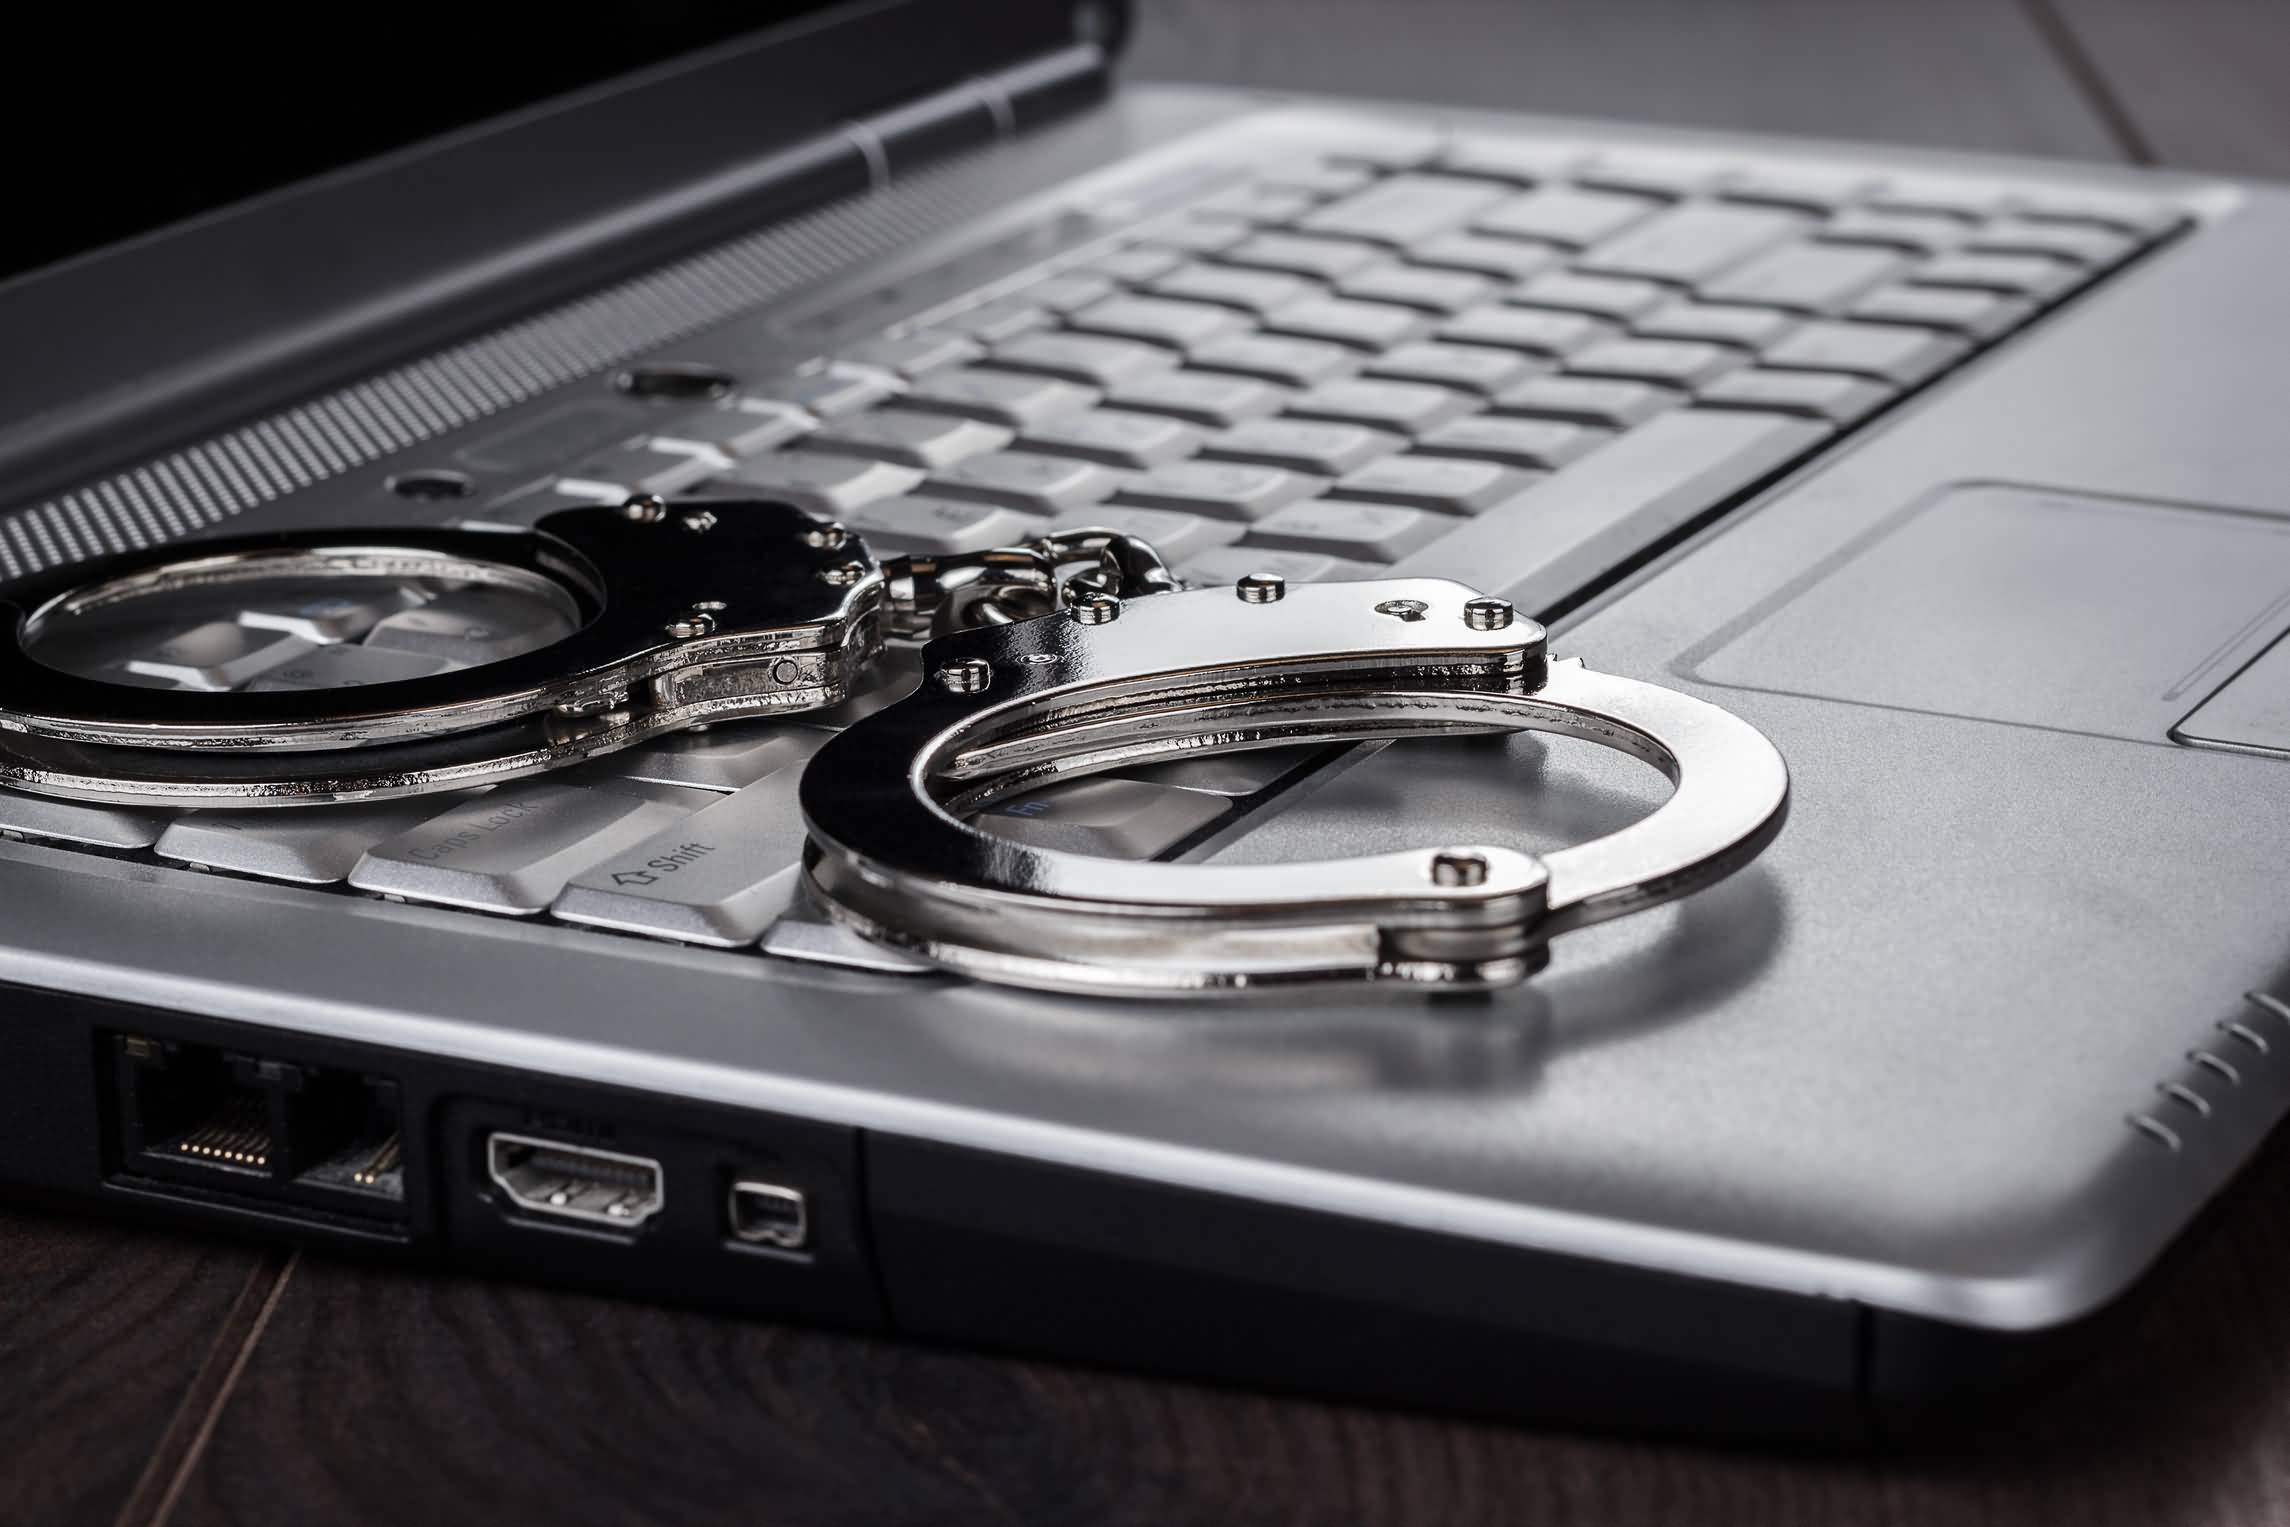 ماهي عقوبة استخدام عناوين مضللة عبر الإنترنت في الإمارات ؟